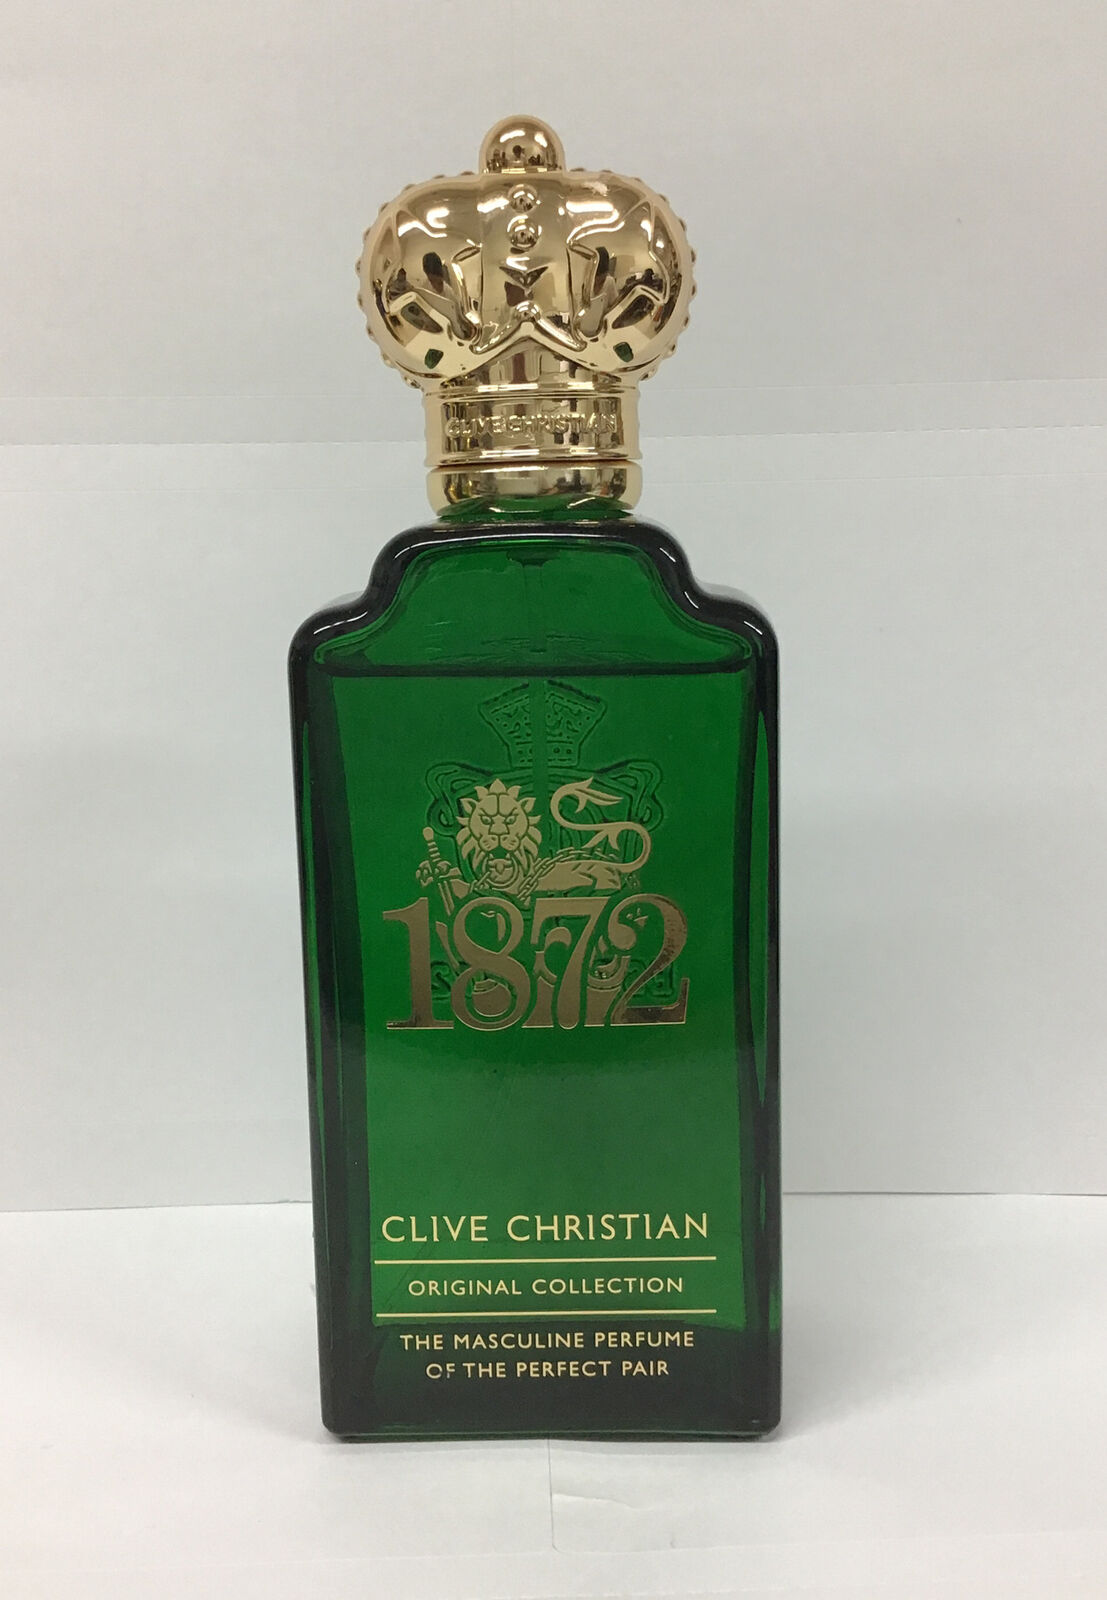 Clive Christian 1872 For Men Eau De Parfum Spray 3.4 Fl Oz, As Pictured.